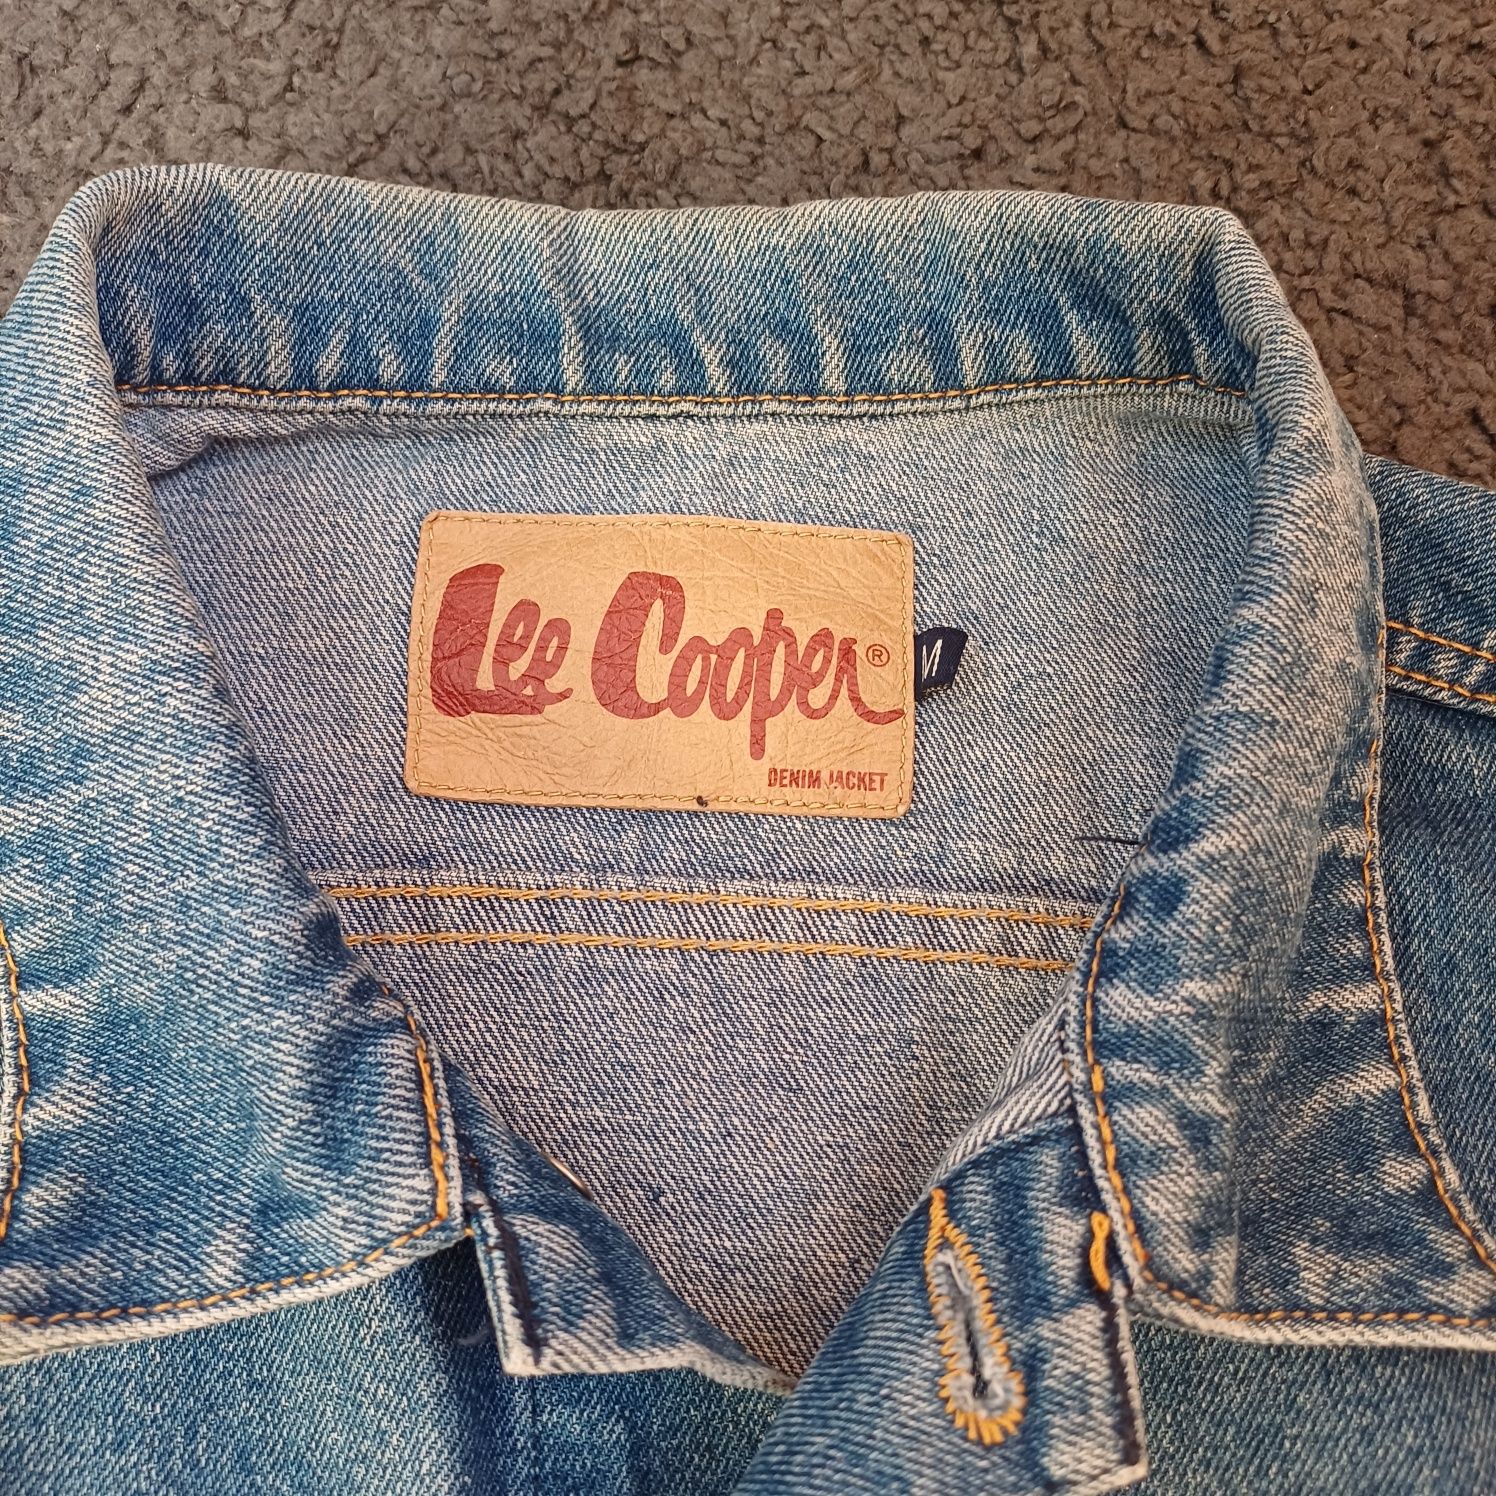 Продам джинсовую куртку Lee cooper